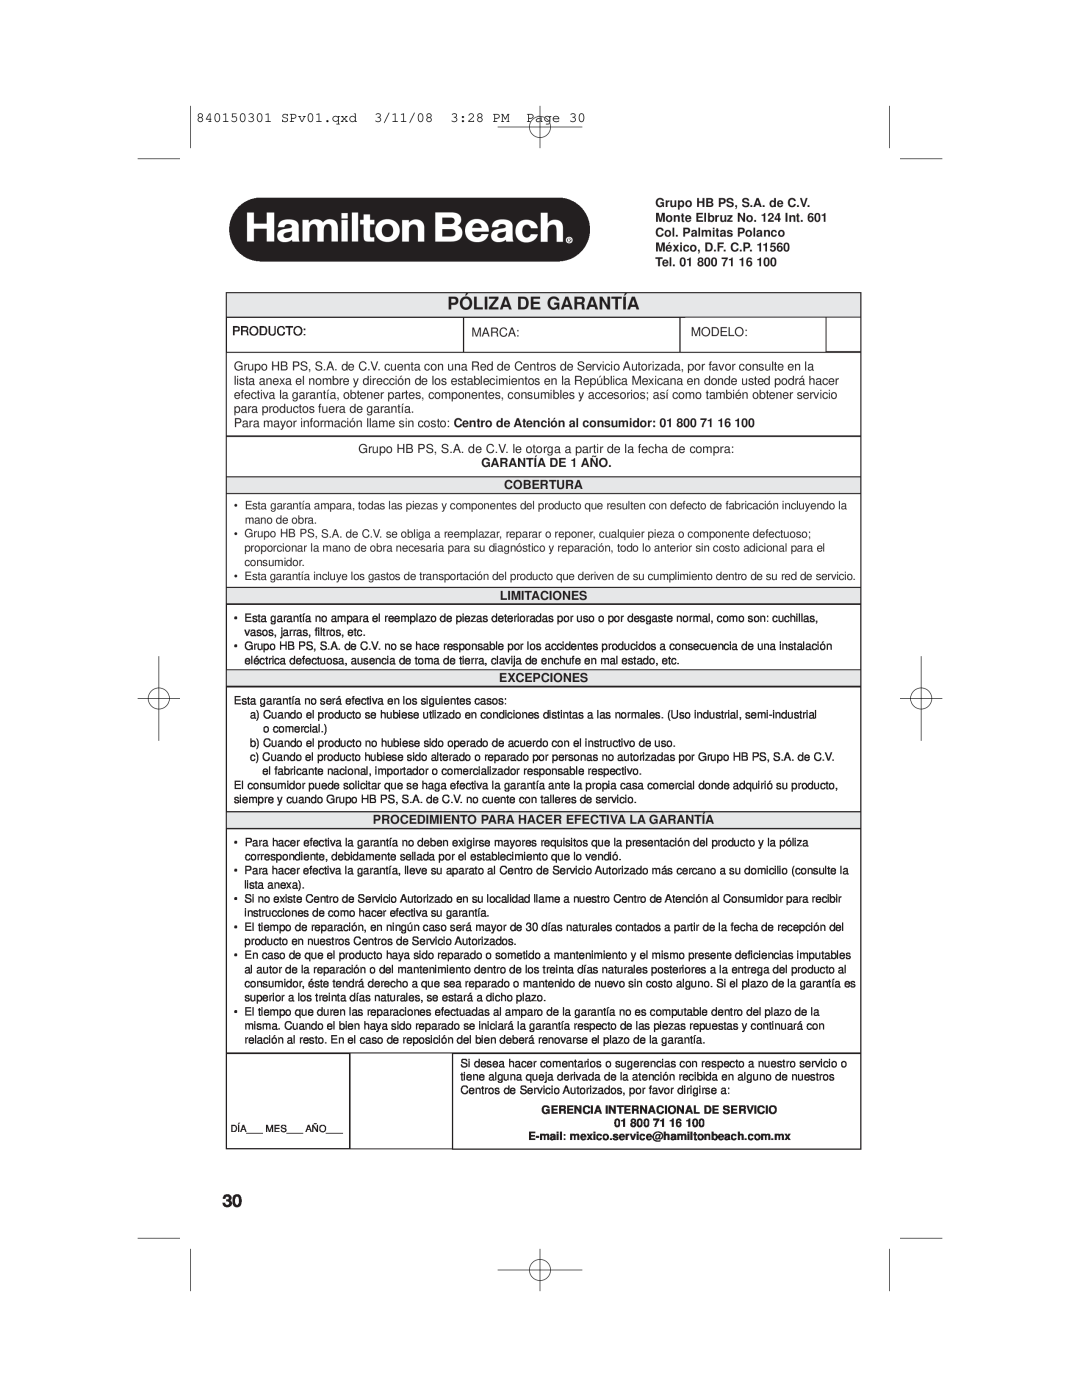 Hamilton Beach 35030C manual Póliza De Garantía, 840150301 SPv01.qxd 3/11/08 328 PM Page, GARANTÍA DE 1 AÑO COBERTURA 